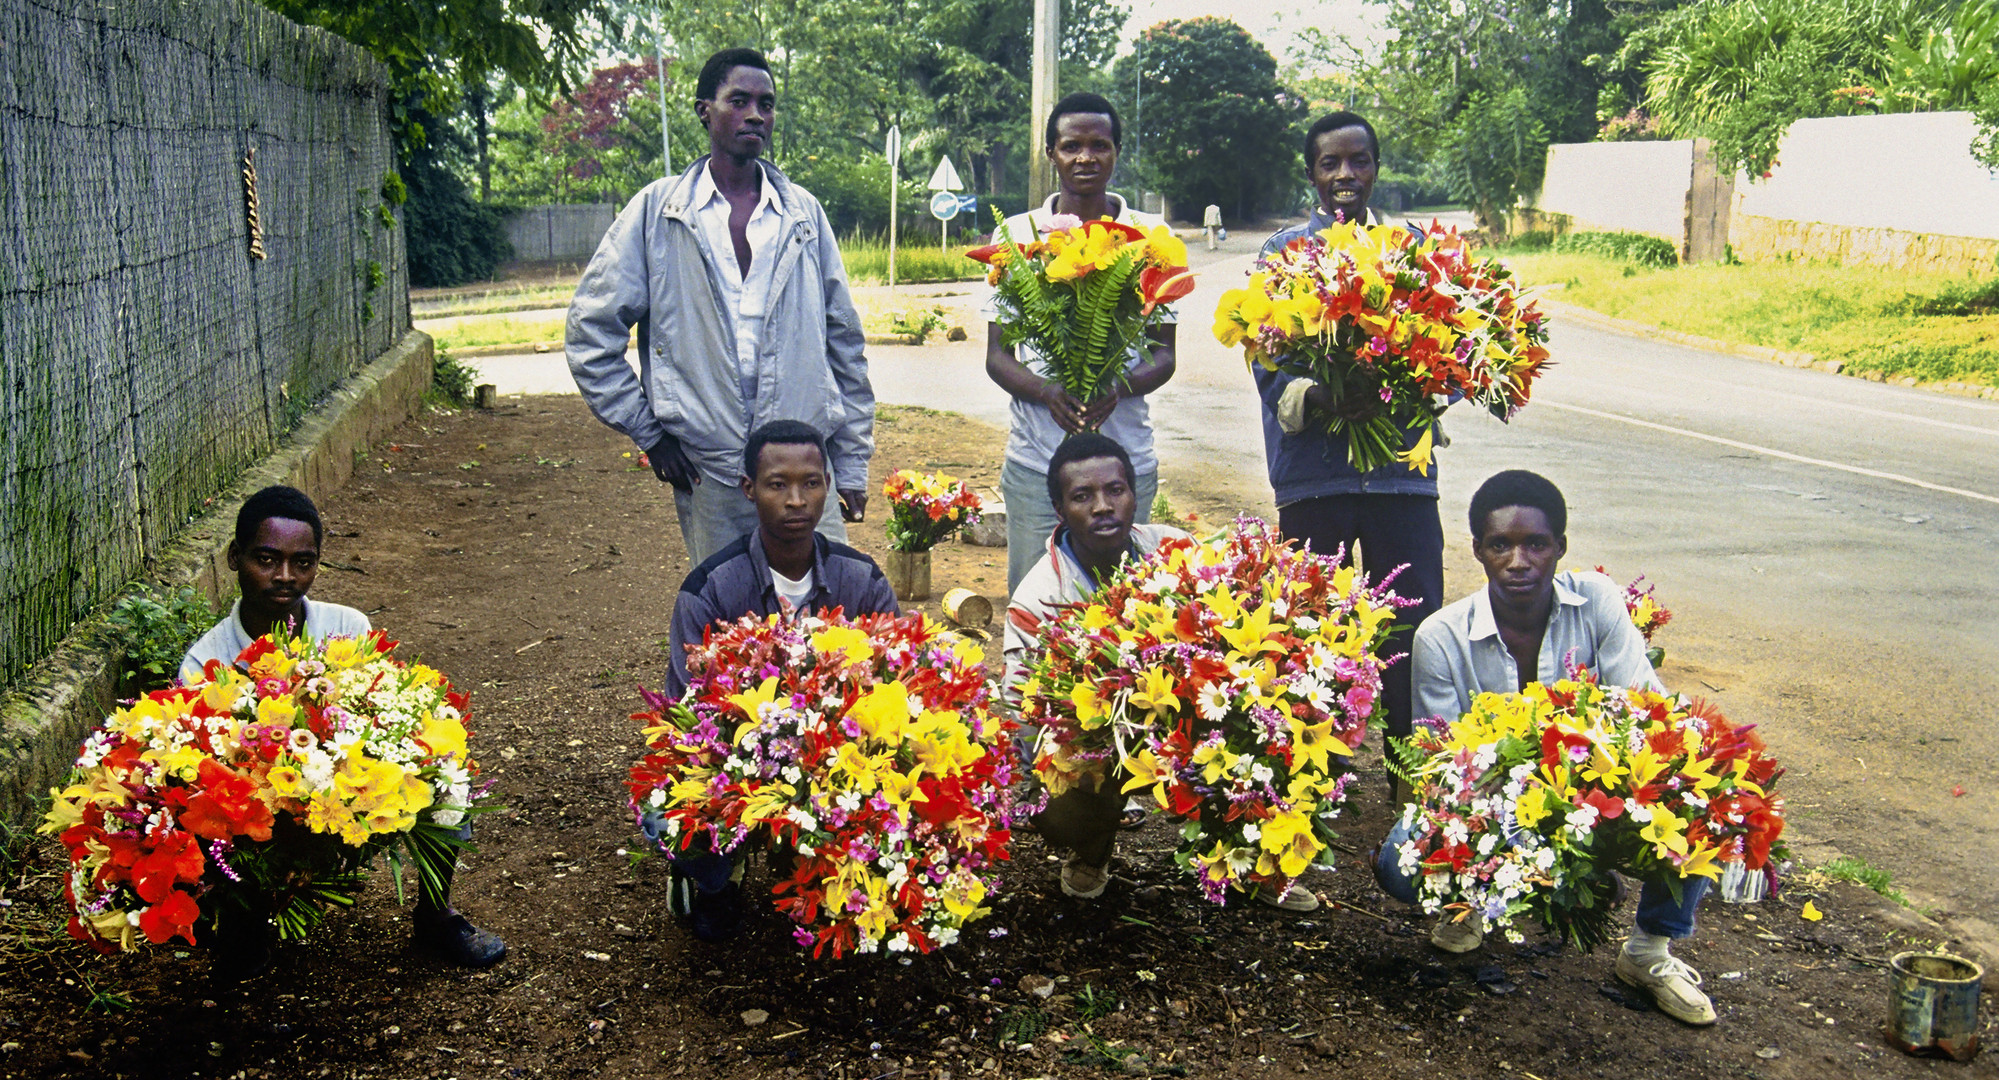 Blumenverkäufer in Kigali